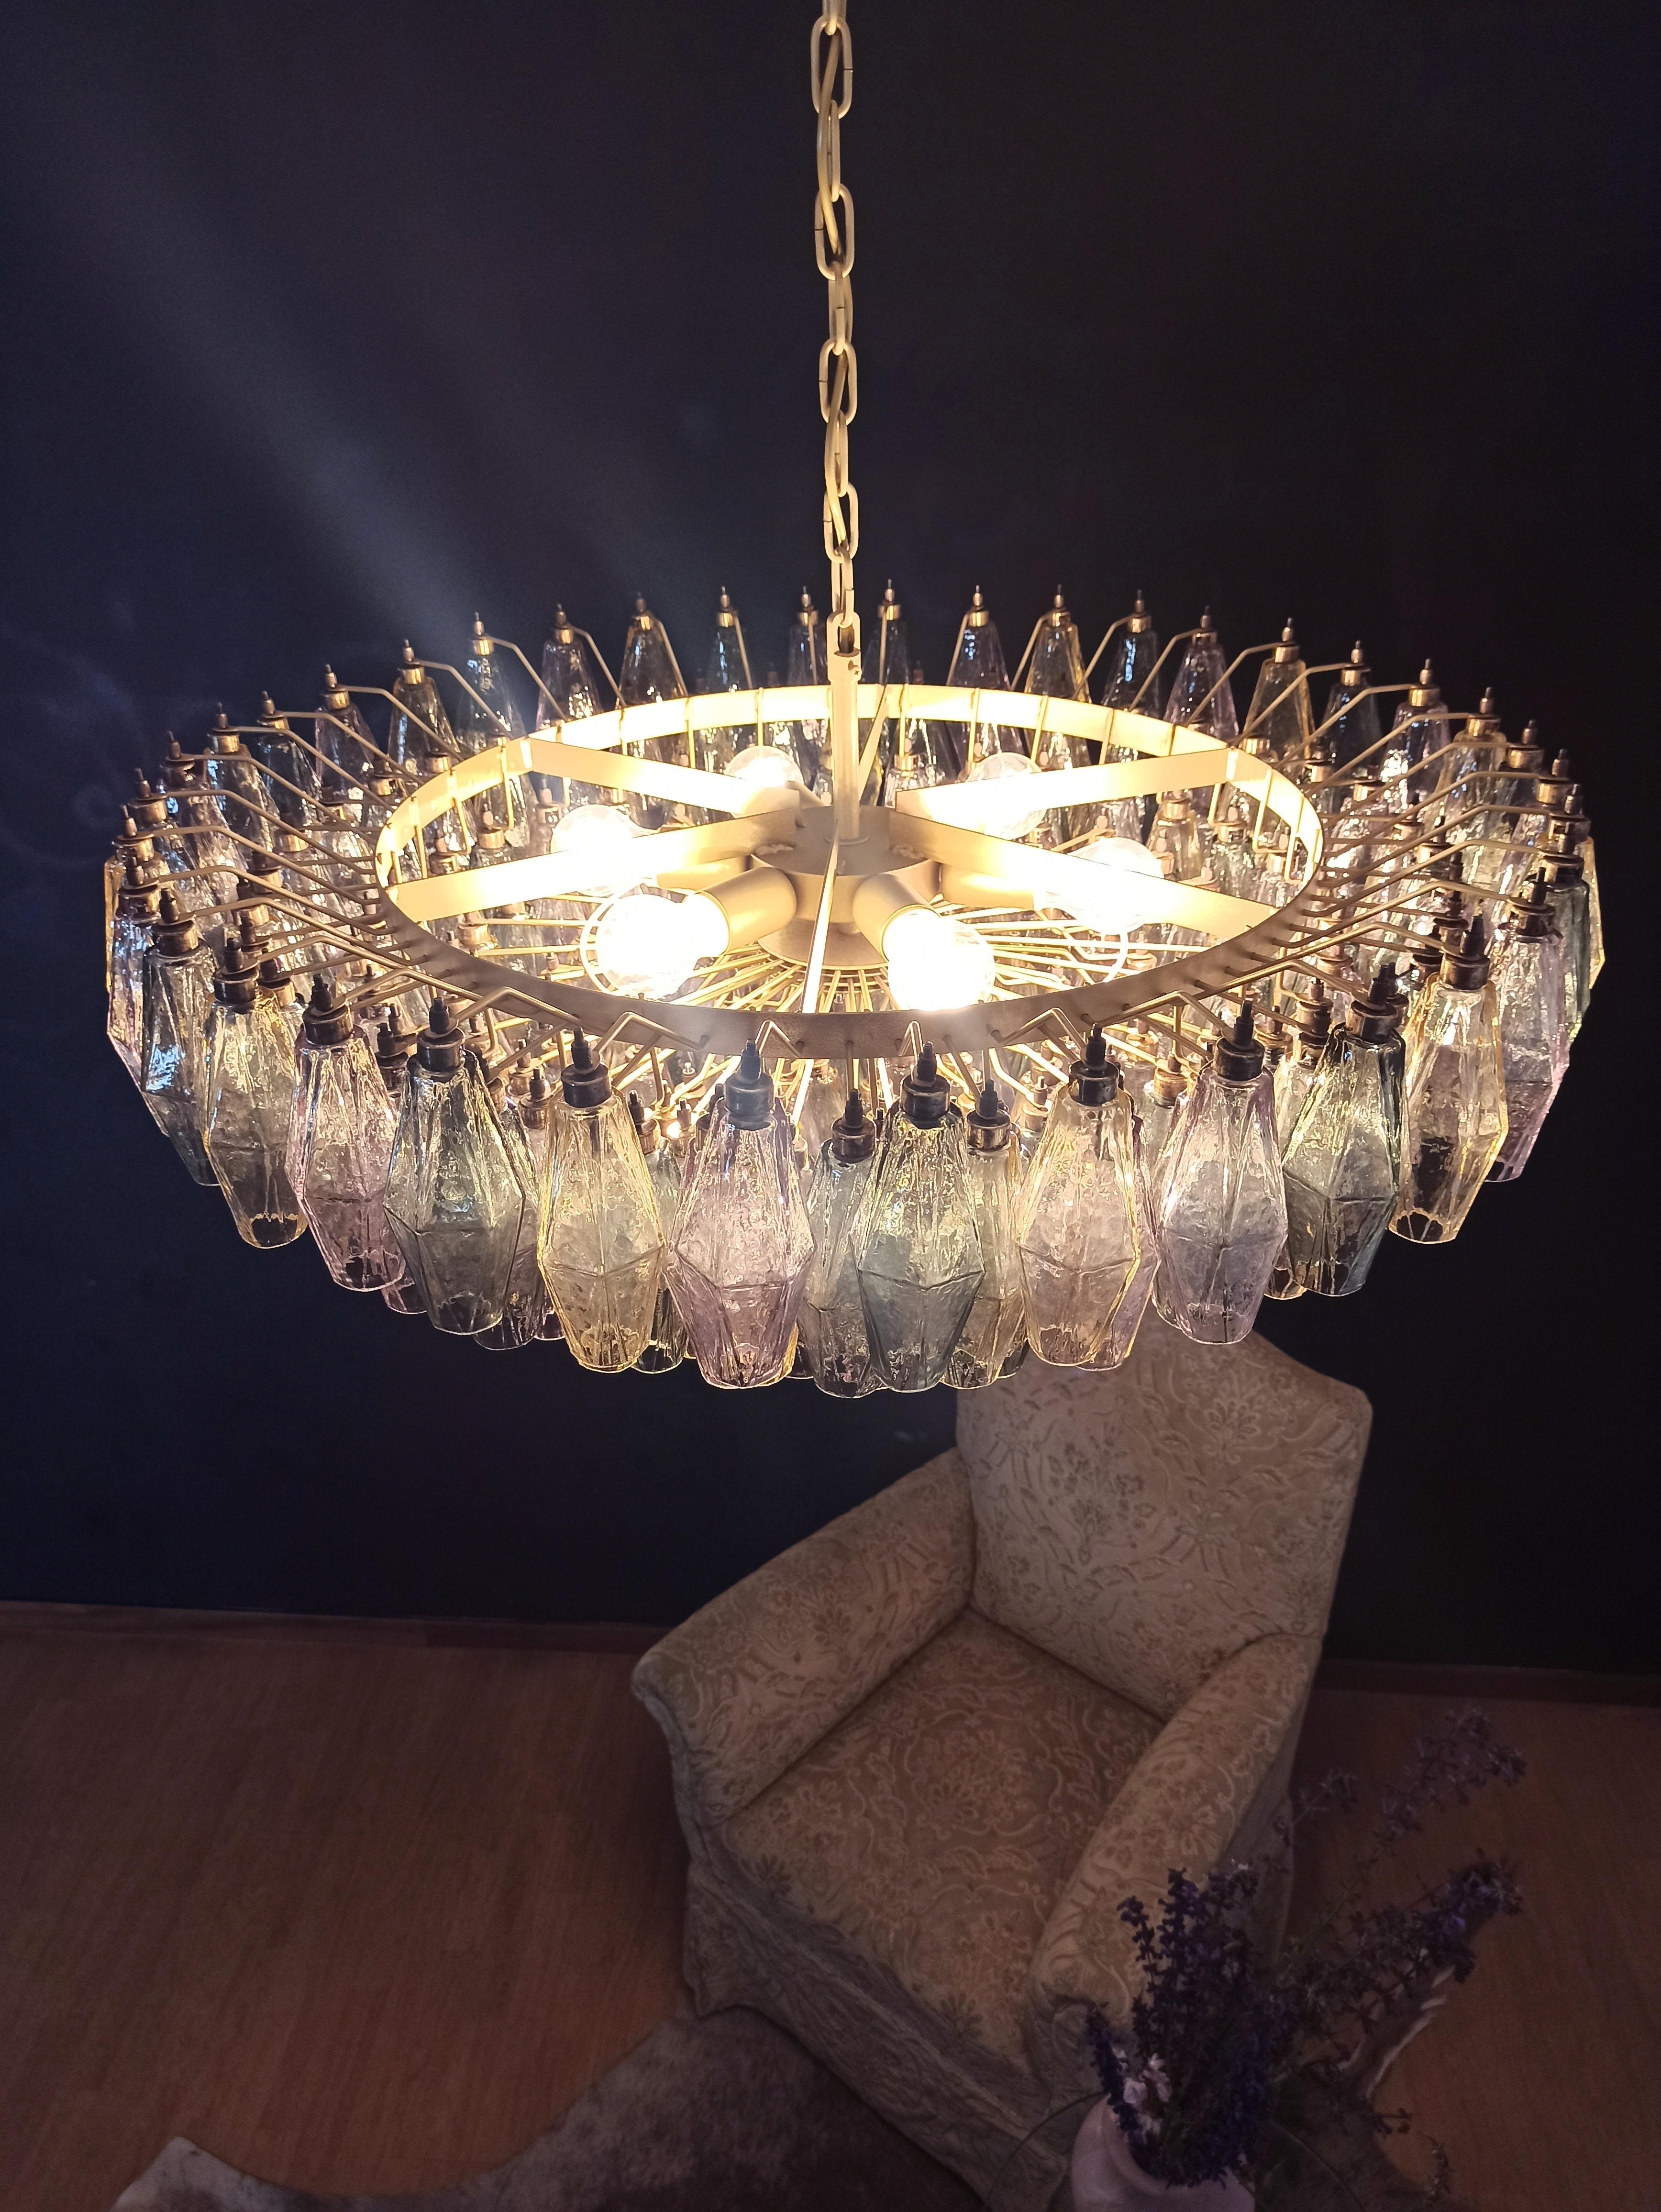 Incroyable candelier en verre de Murano - 185 verres multicolores 12